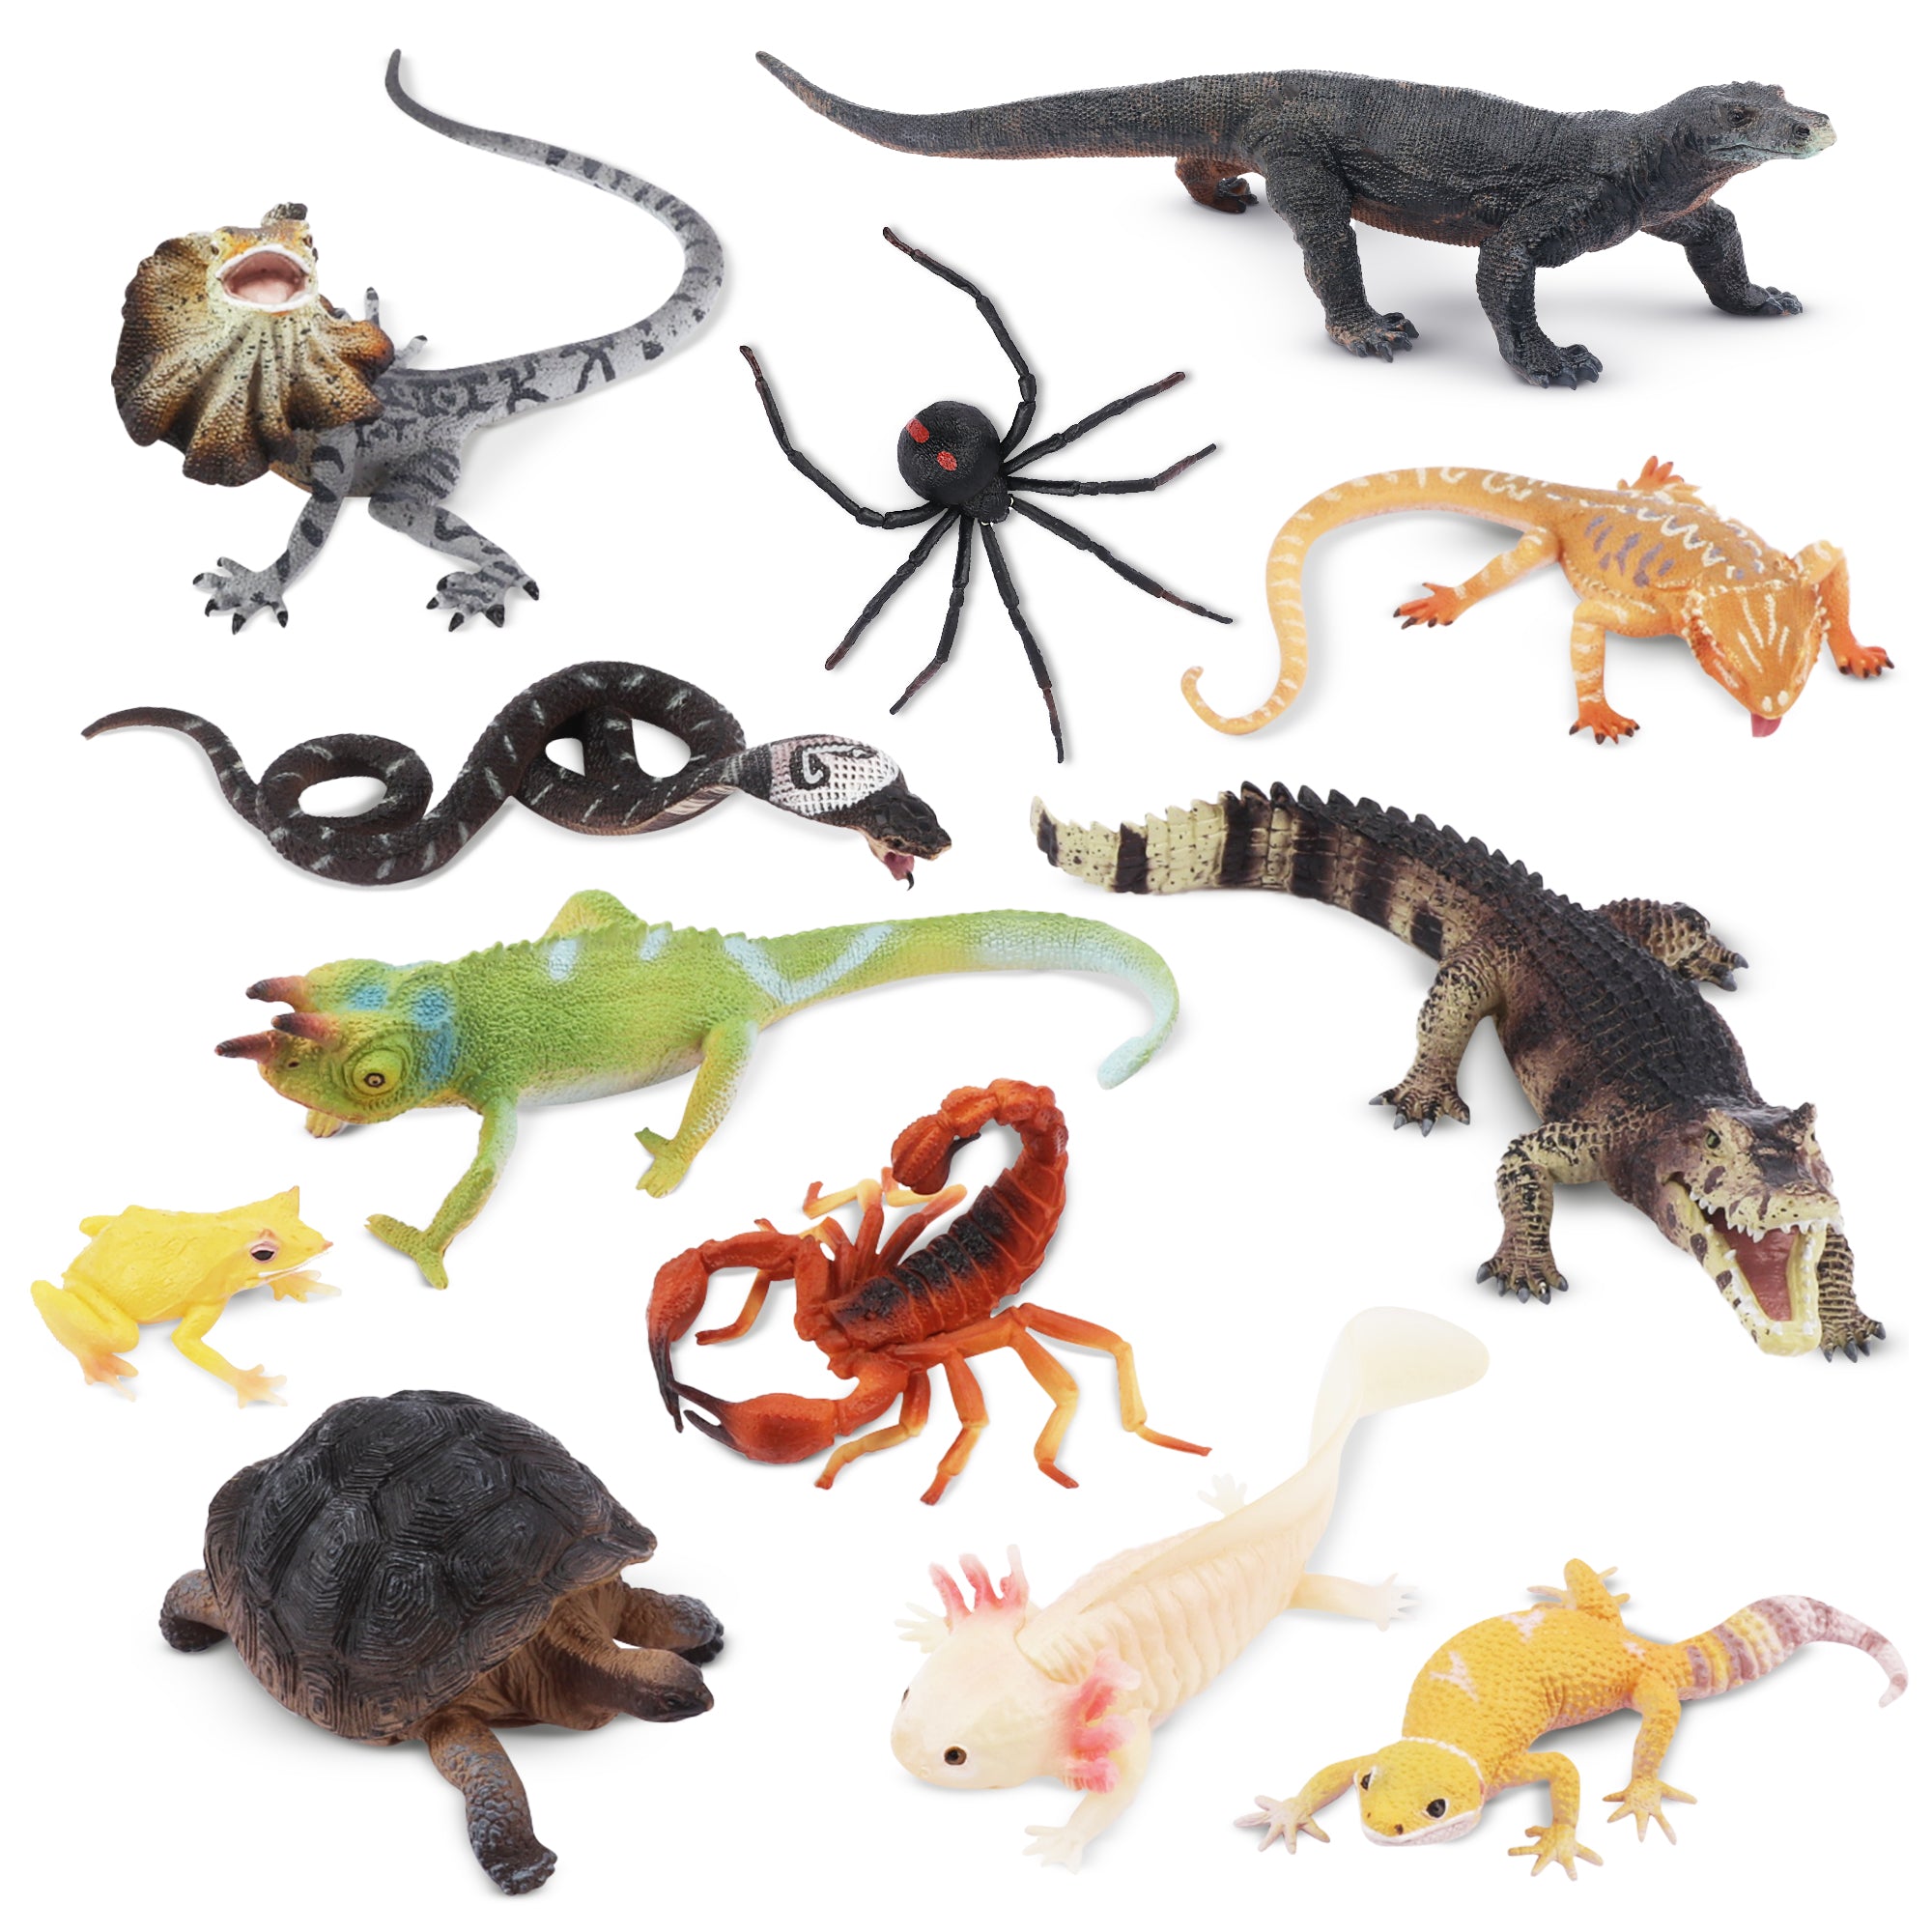 12-Piece Reptile Animal Variety Figurines Playset-2